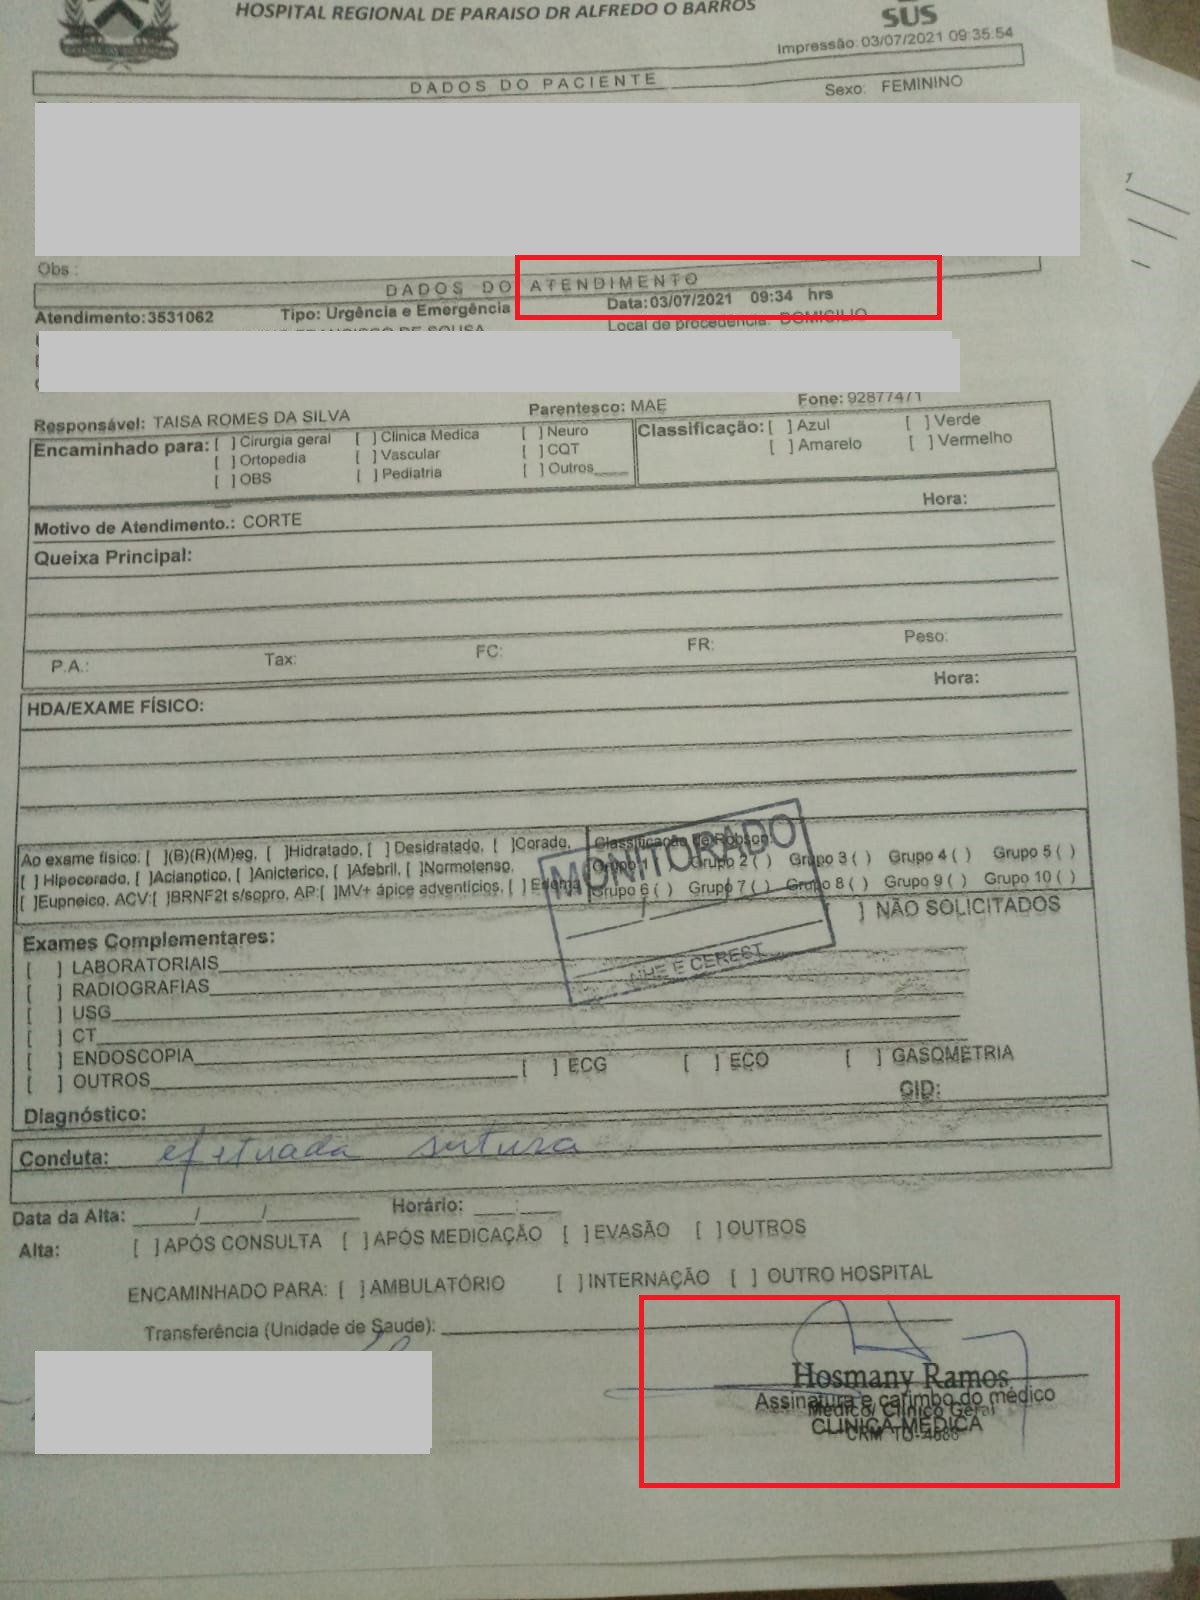 Assinatura do médico Hosmany Ramos na ficha de atendimento de uma criança